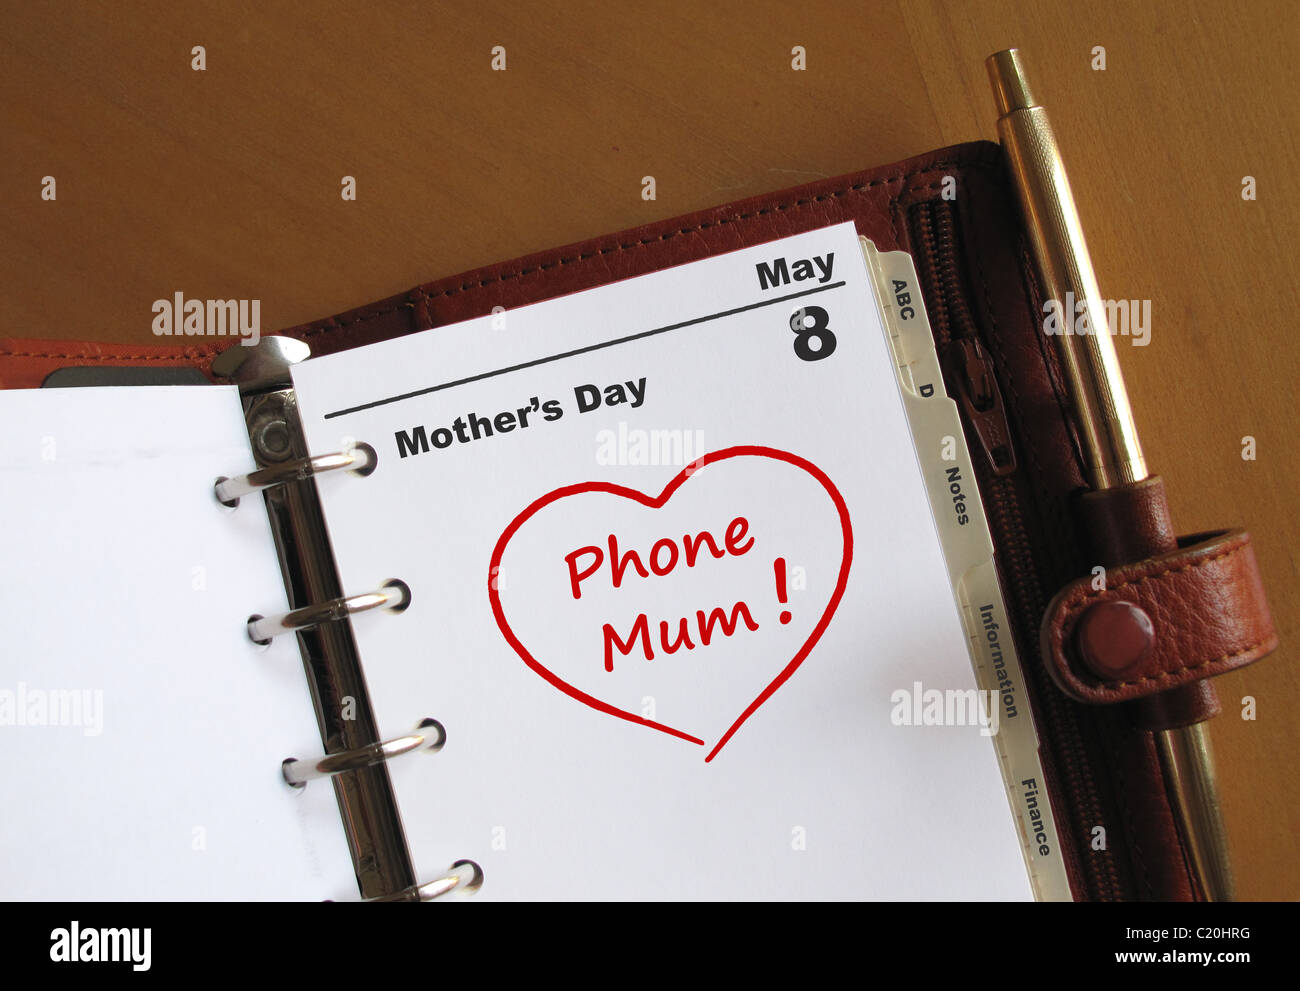 La fête des Mères le 8 mai date d'agenda dans un organiseur personnel avec un coeur et 'Phone Mum' Banque D'Images